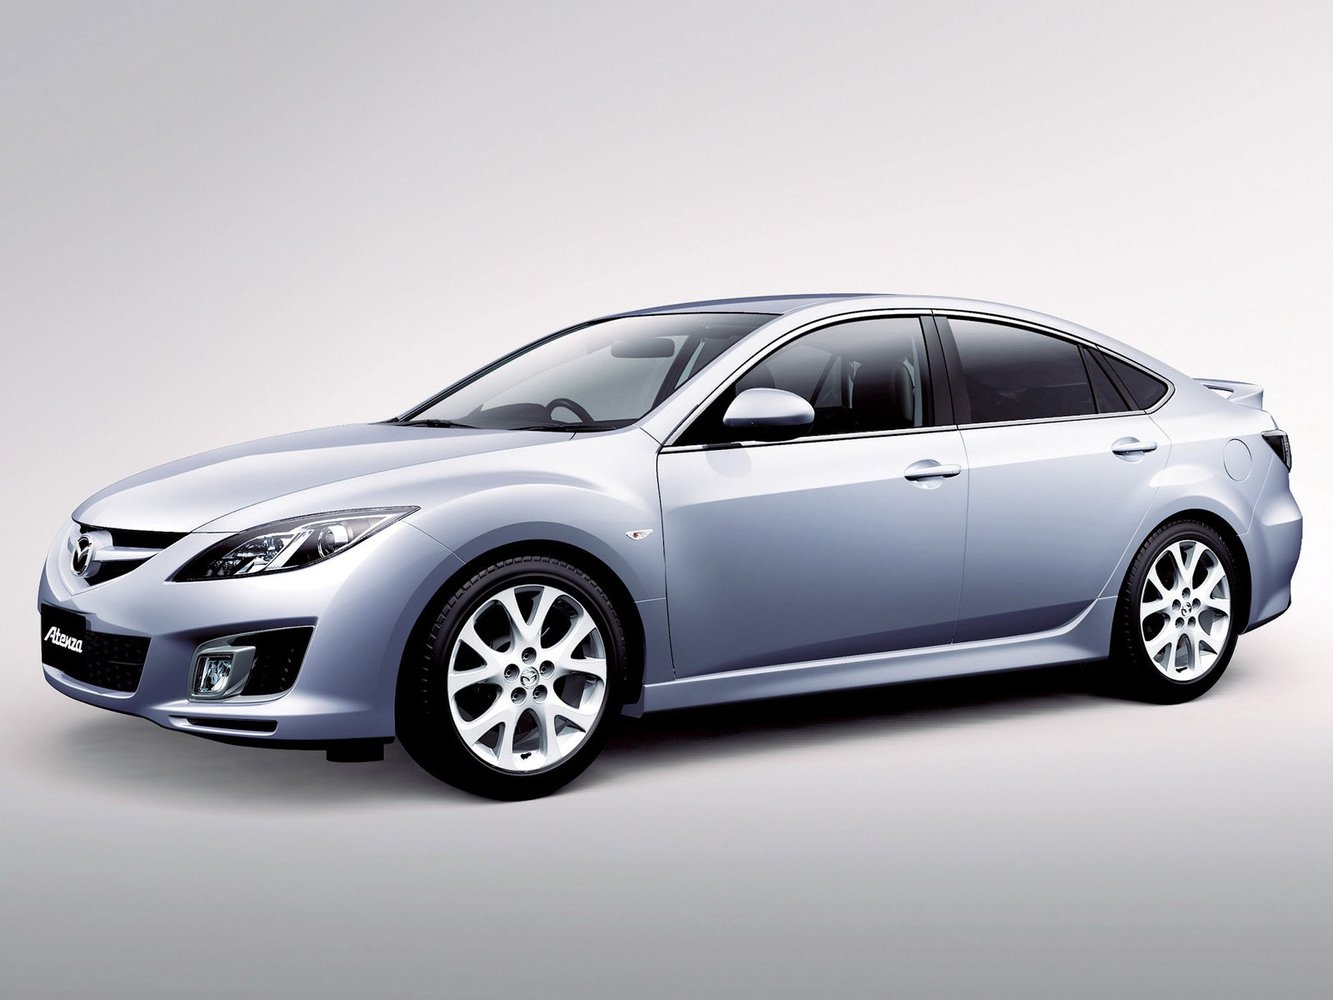 Mazda Atenza 2007 - 2012